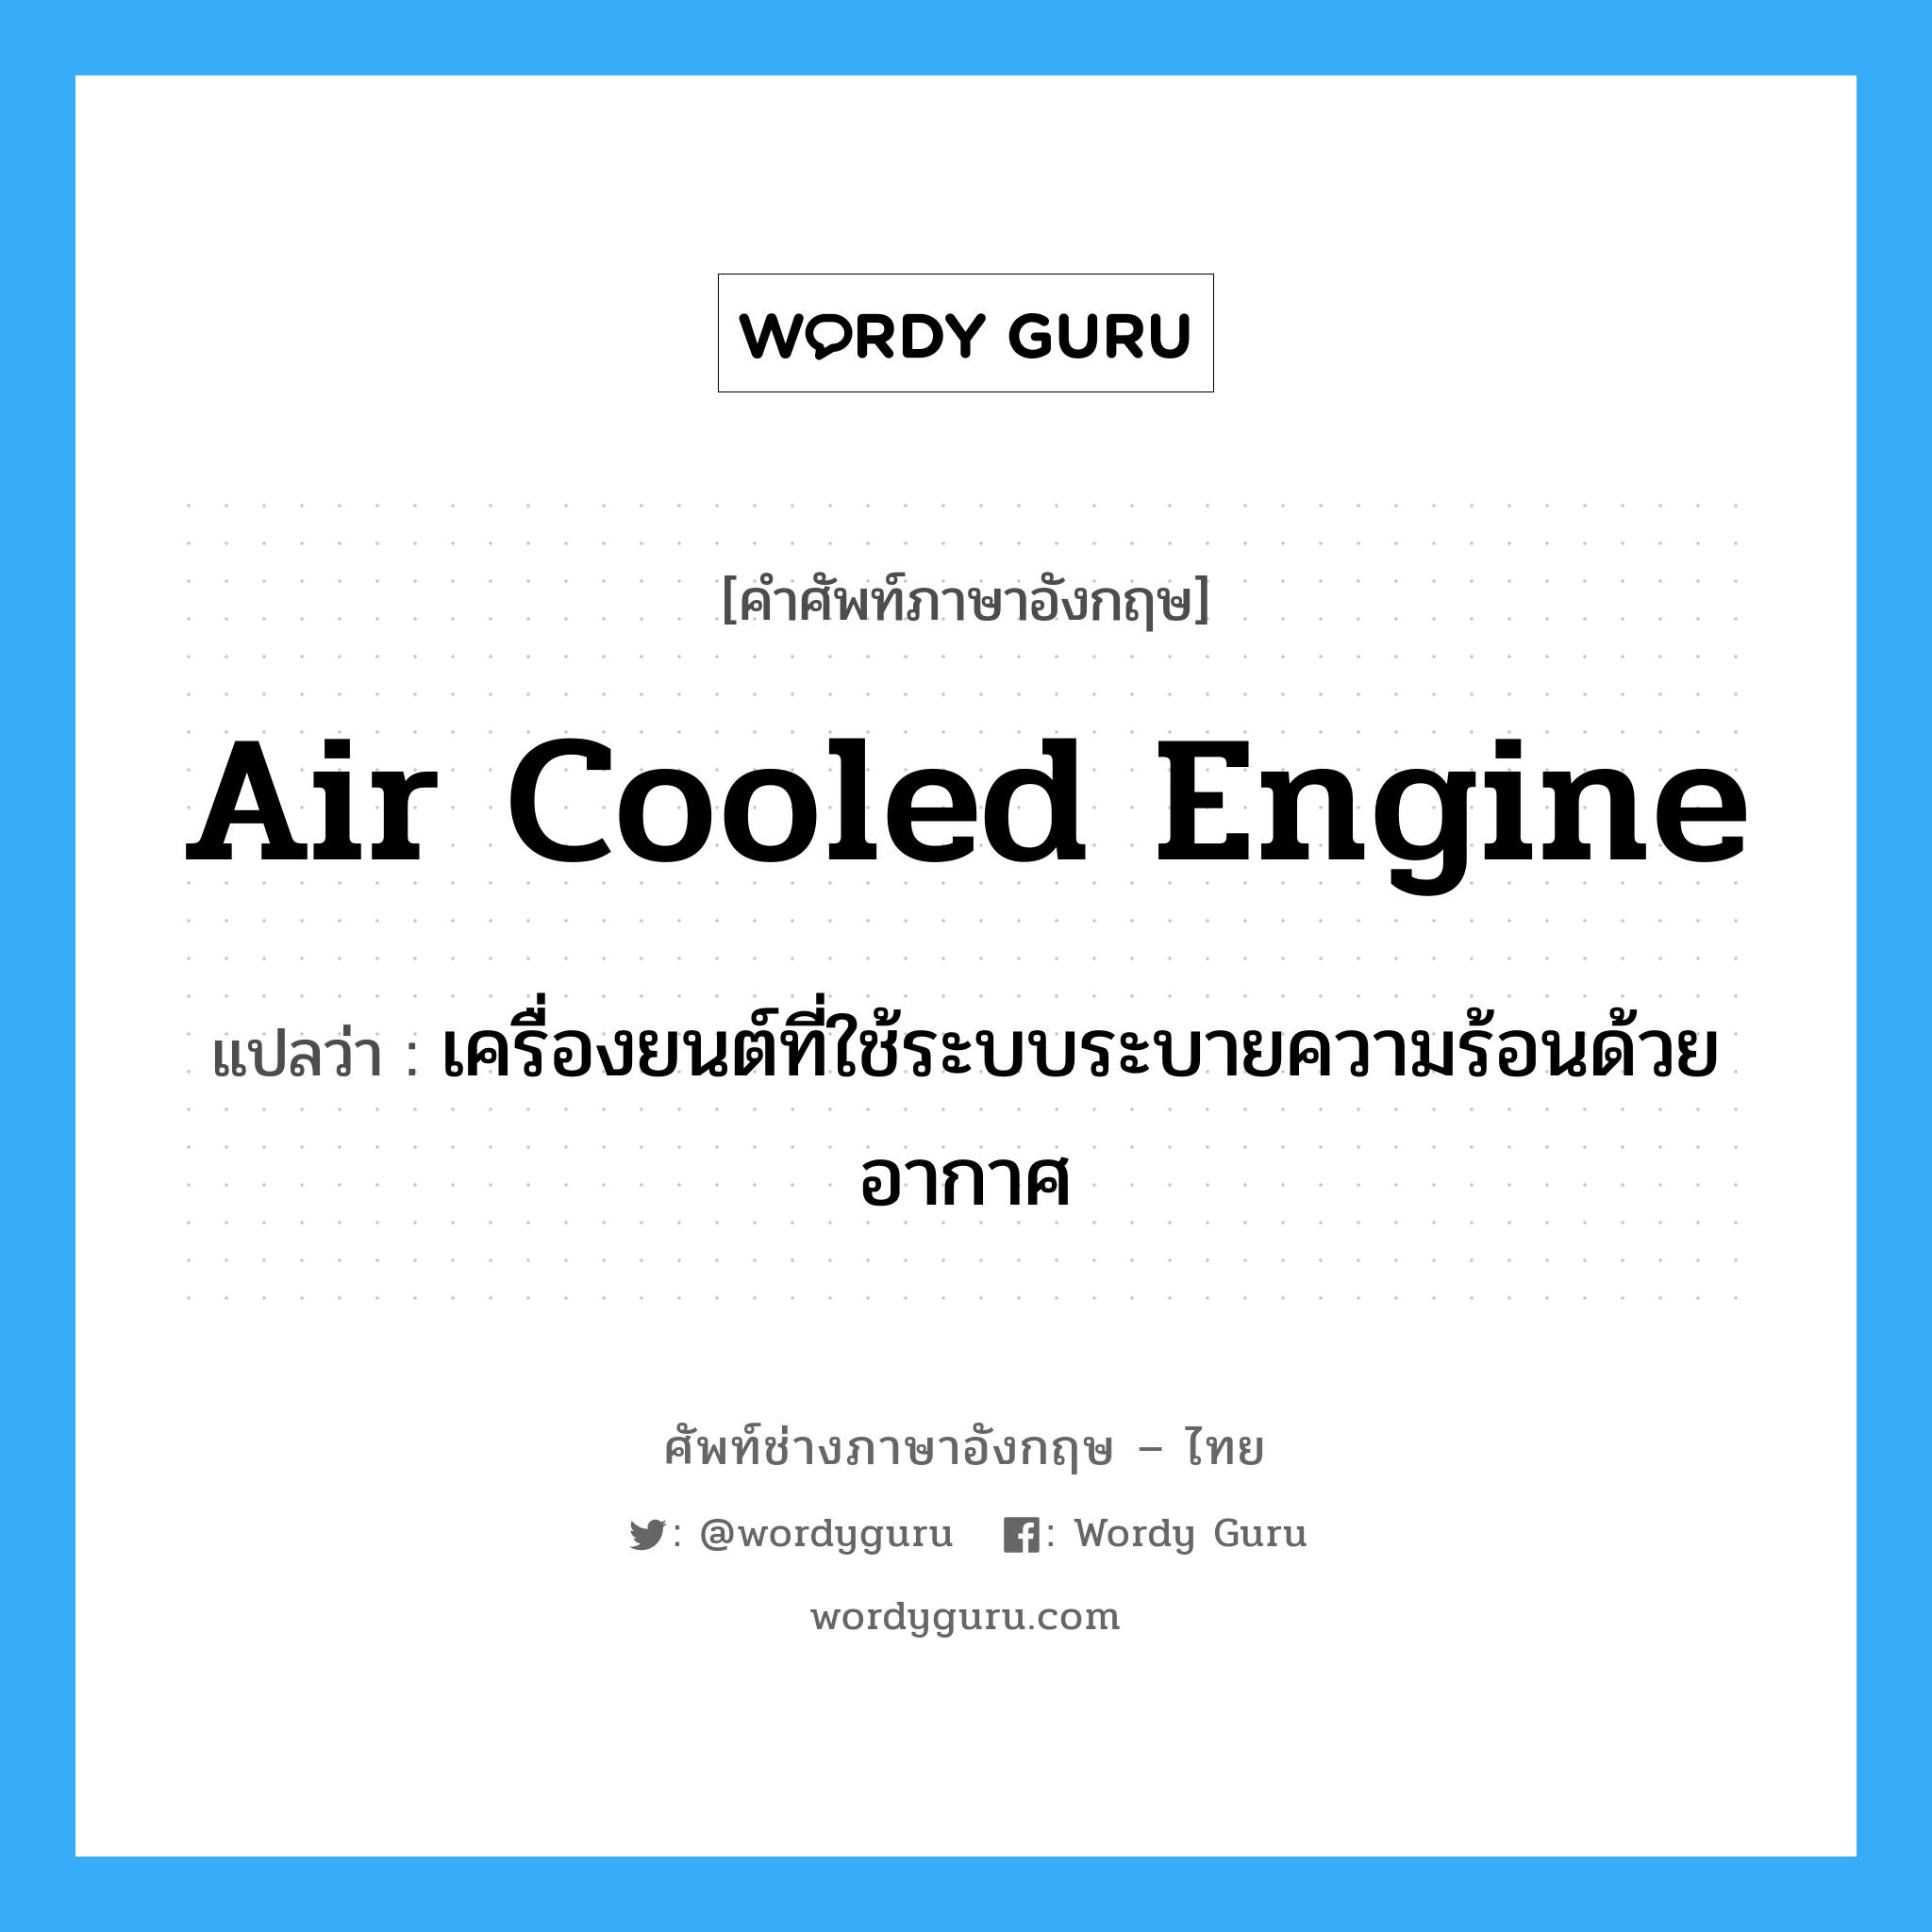 air cooled engine แปลว่า?, คำศัพท์ช่างภาษาอังกฤษ - ไทย air cooled engine คำศัพท์ภาษาอังกฤษ air cooled engine แปลว่า เครื่องยนต์ที่ใช้ระบบระบายความร้อนด้วยอากาศ